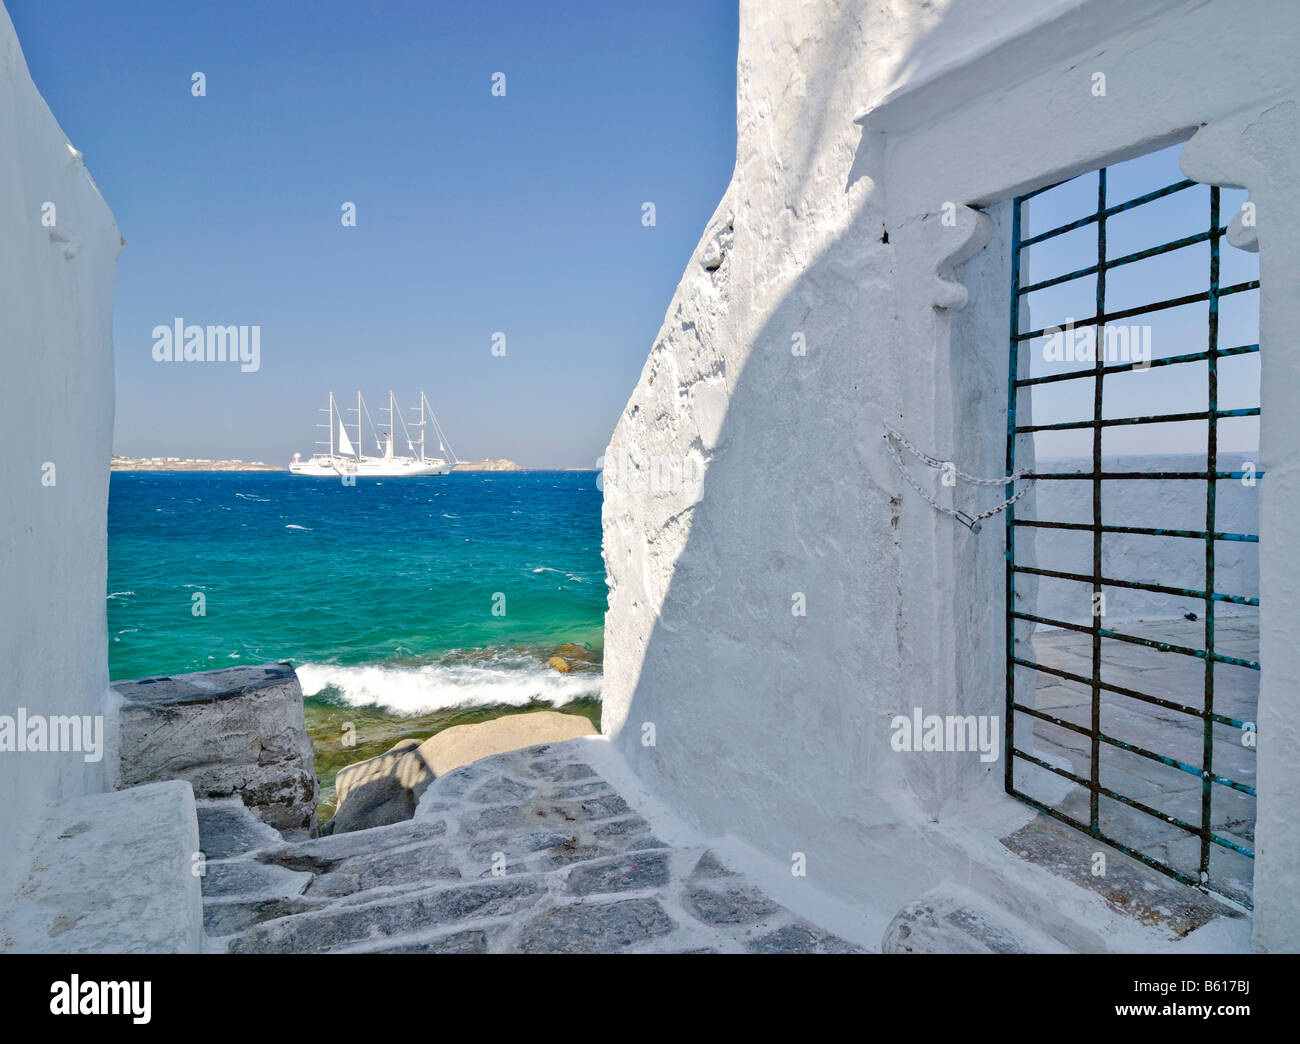 Vista a través de un callejón con paredes blancas y una puerta con barras hacia un velero de cuatro mástiles o barca en un mar turquesa Foto de stock